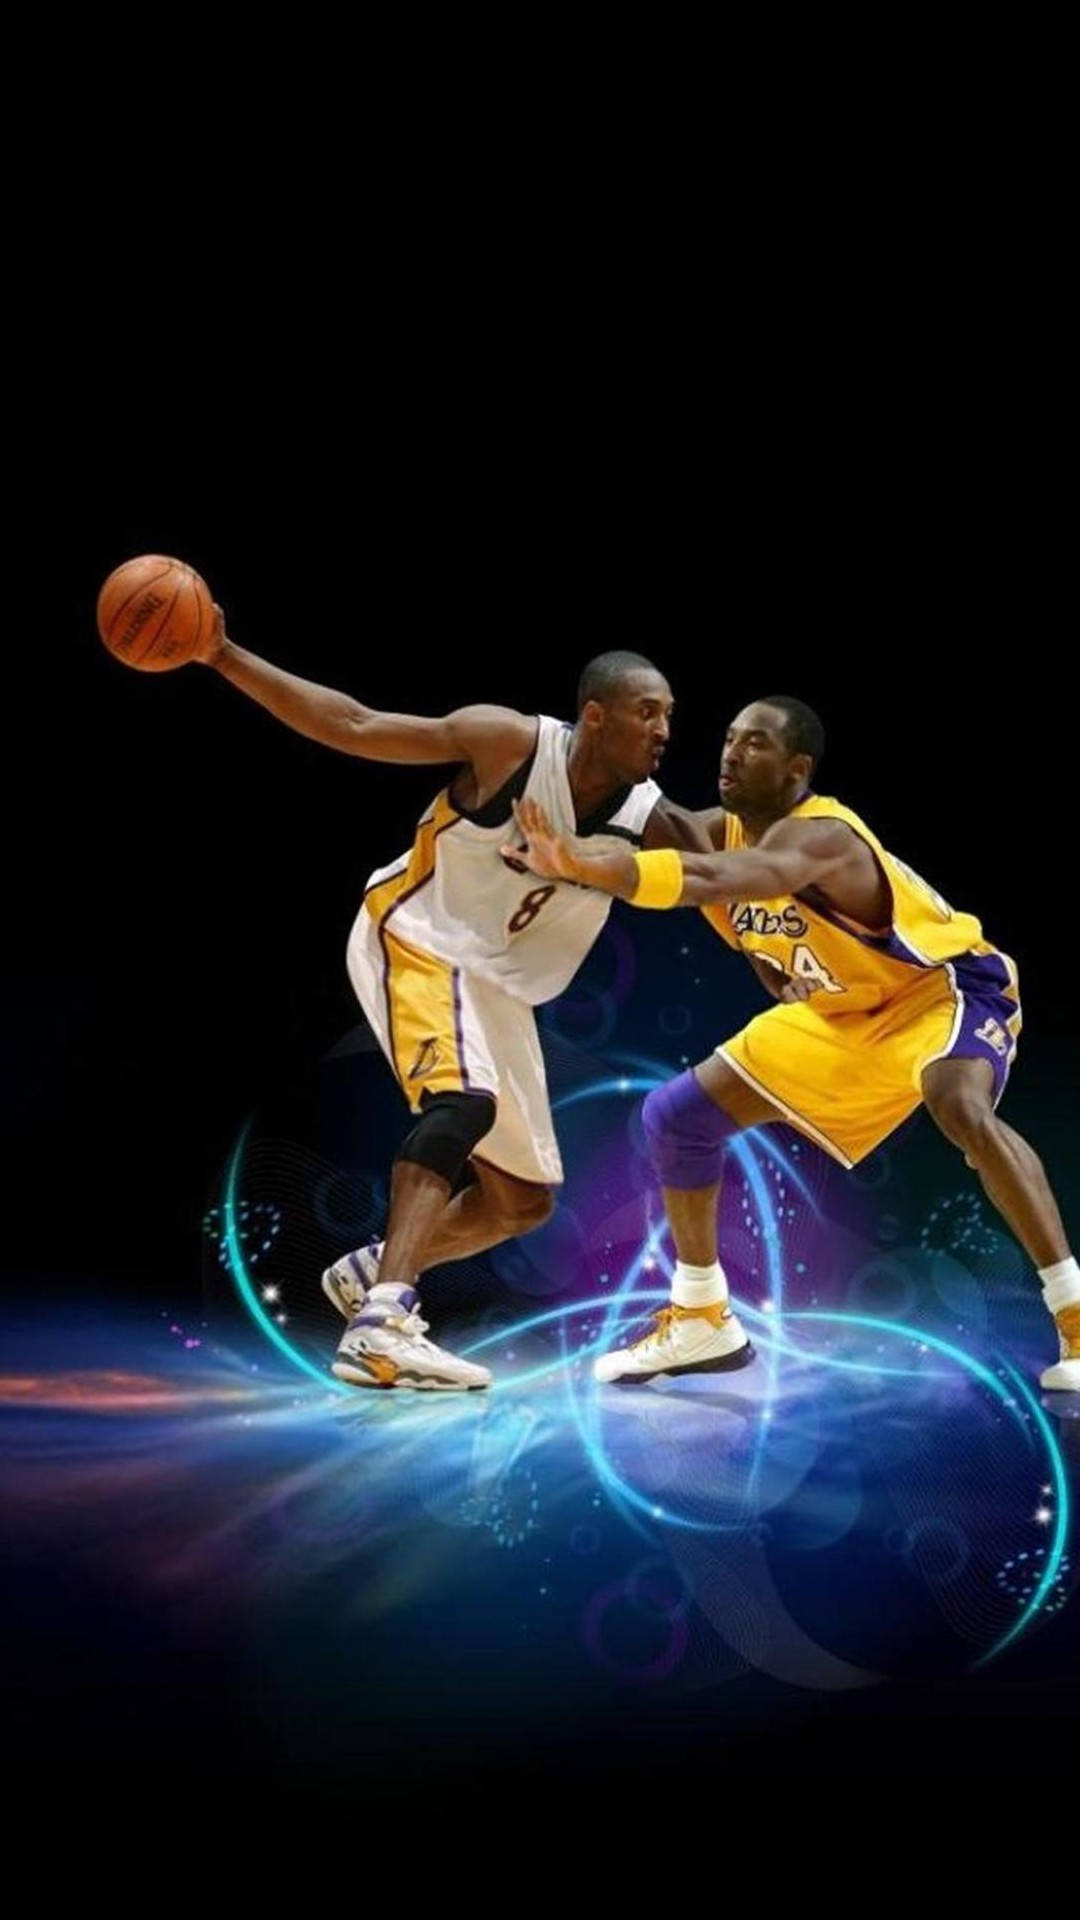 Kobe Vs Kobe Cool Basketball Iphone